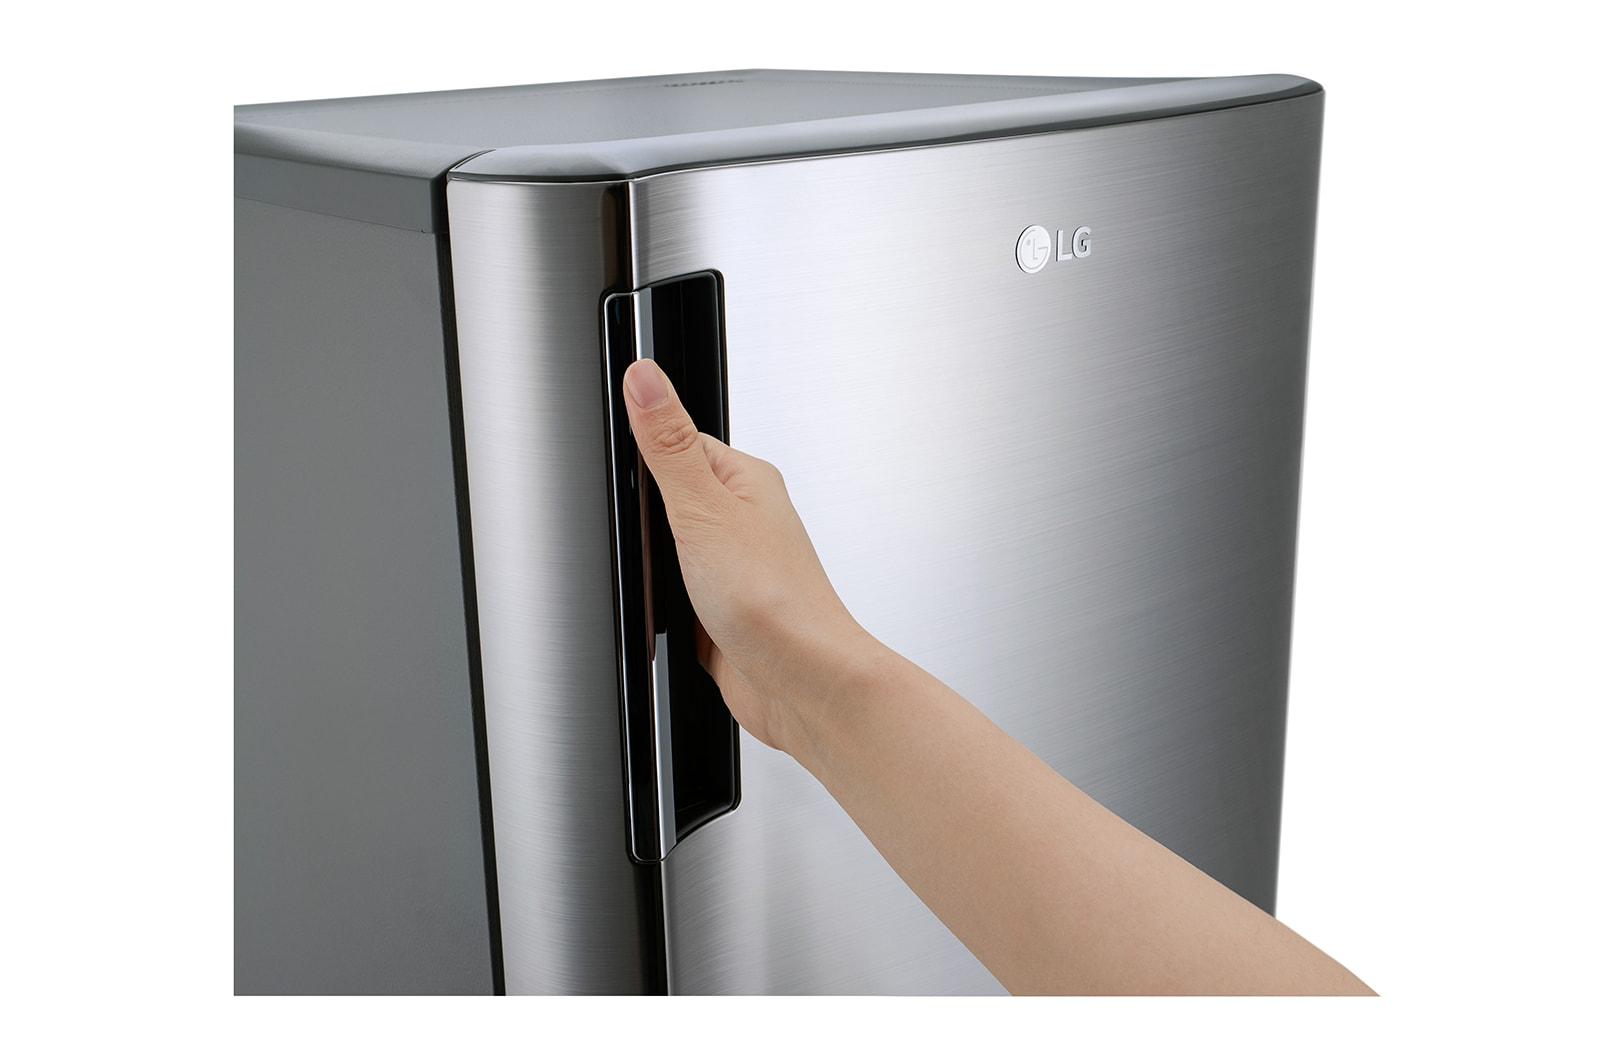 6 cu. ft. Single Door Refrigerator